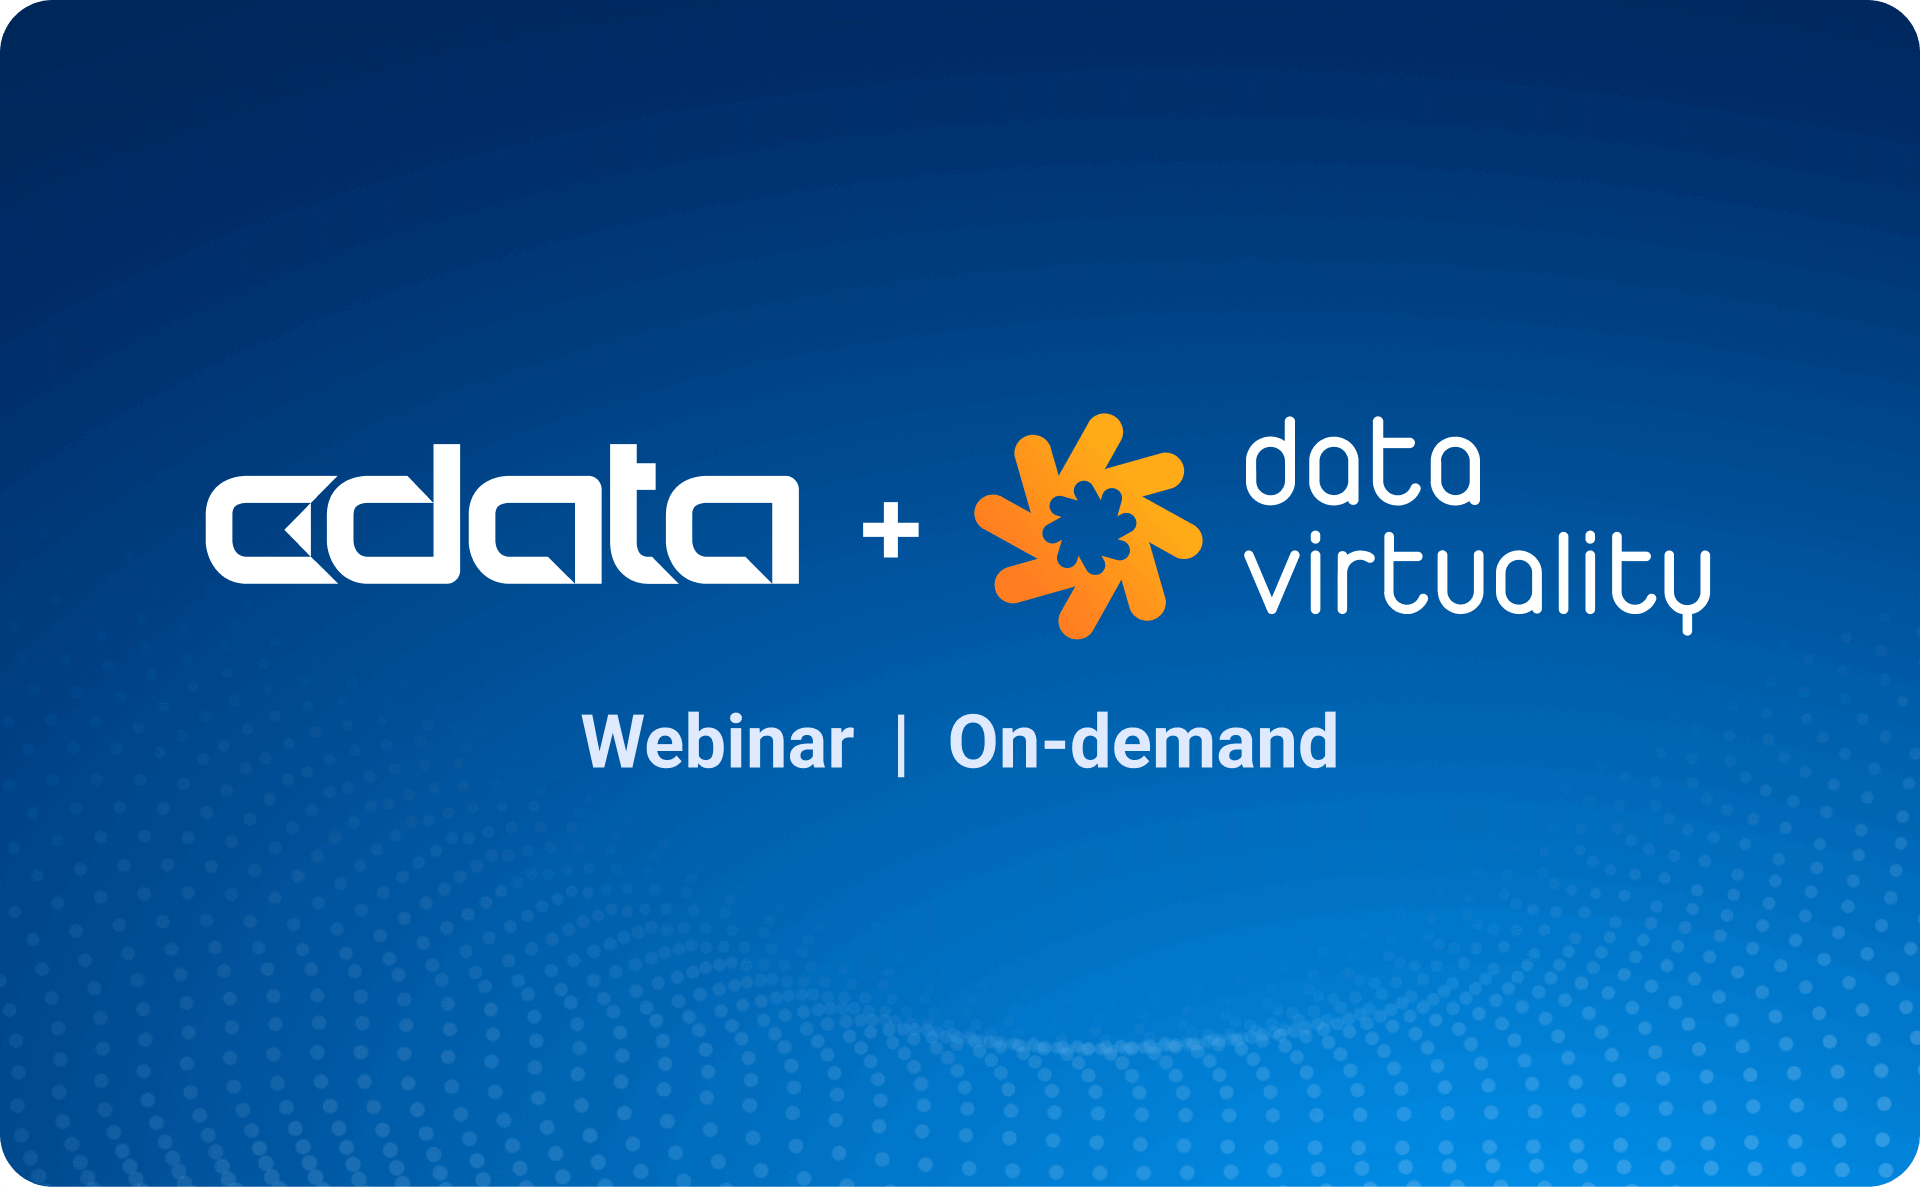 CData + Data Virtuality